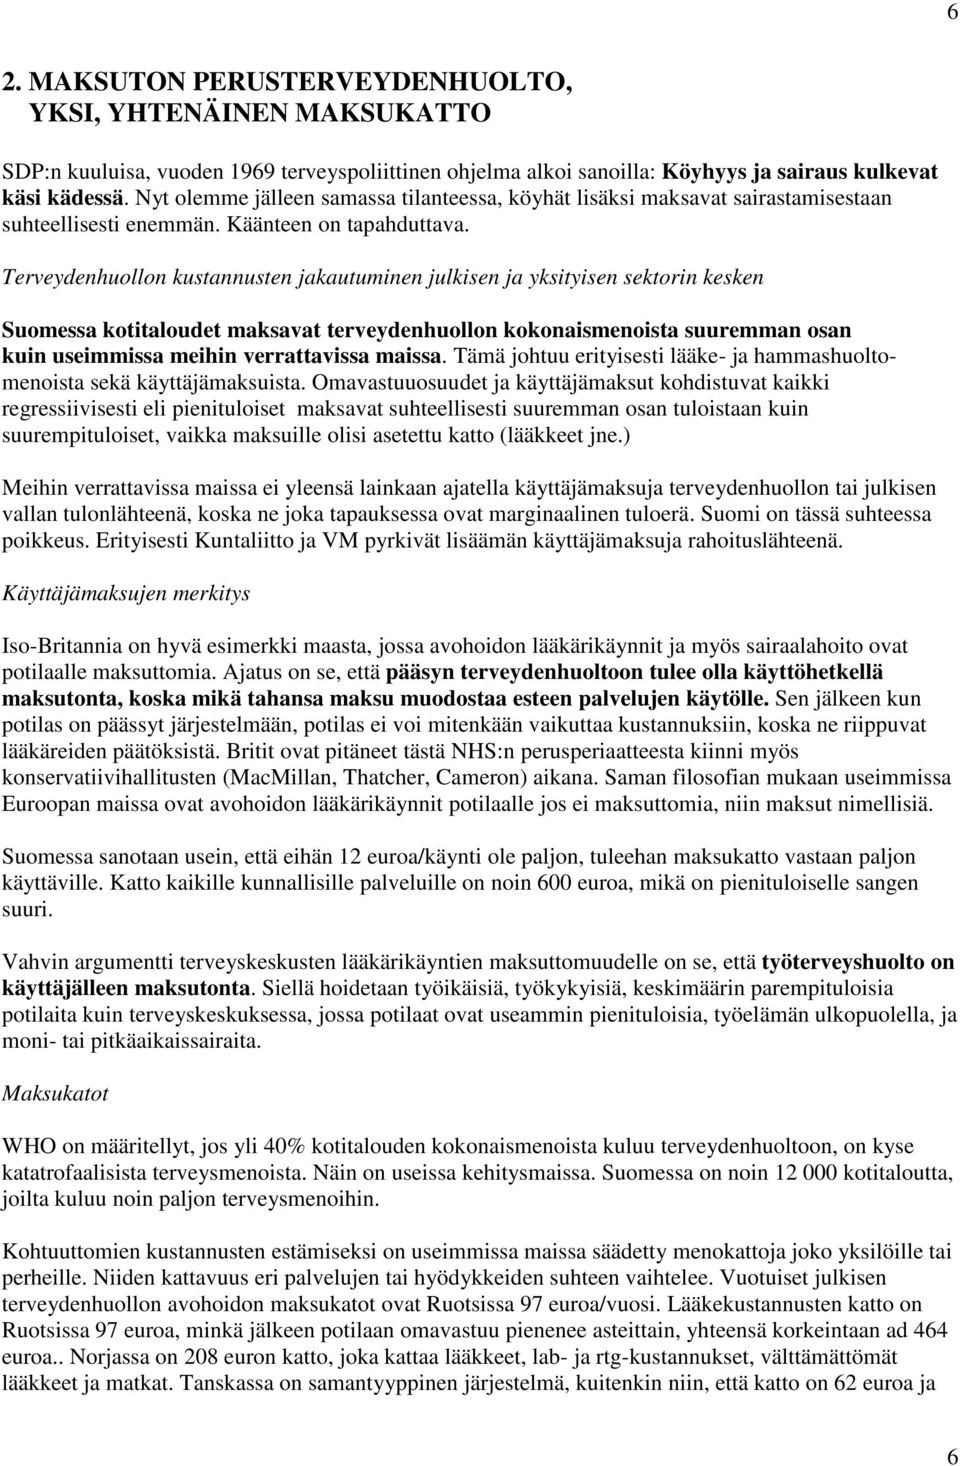 Terveydenhuollon kustannusten jakautuminen julkisen ja yksityisen sektorin kesken Suomessa kotitaloudet maksavat terveydenhuollon kokonaismenoista suuremman osan kuin useimmissa meihin verrattavissa